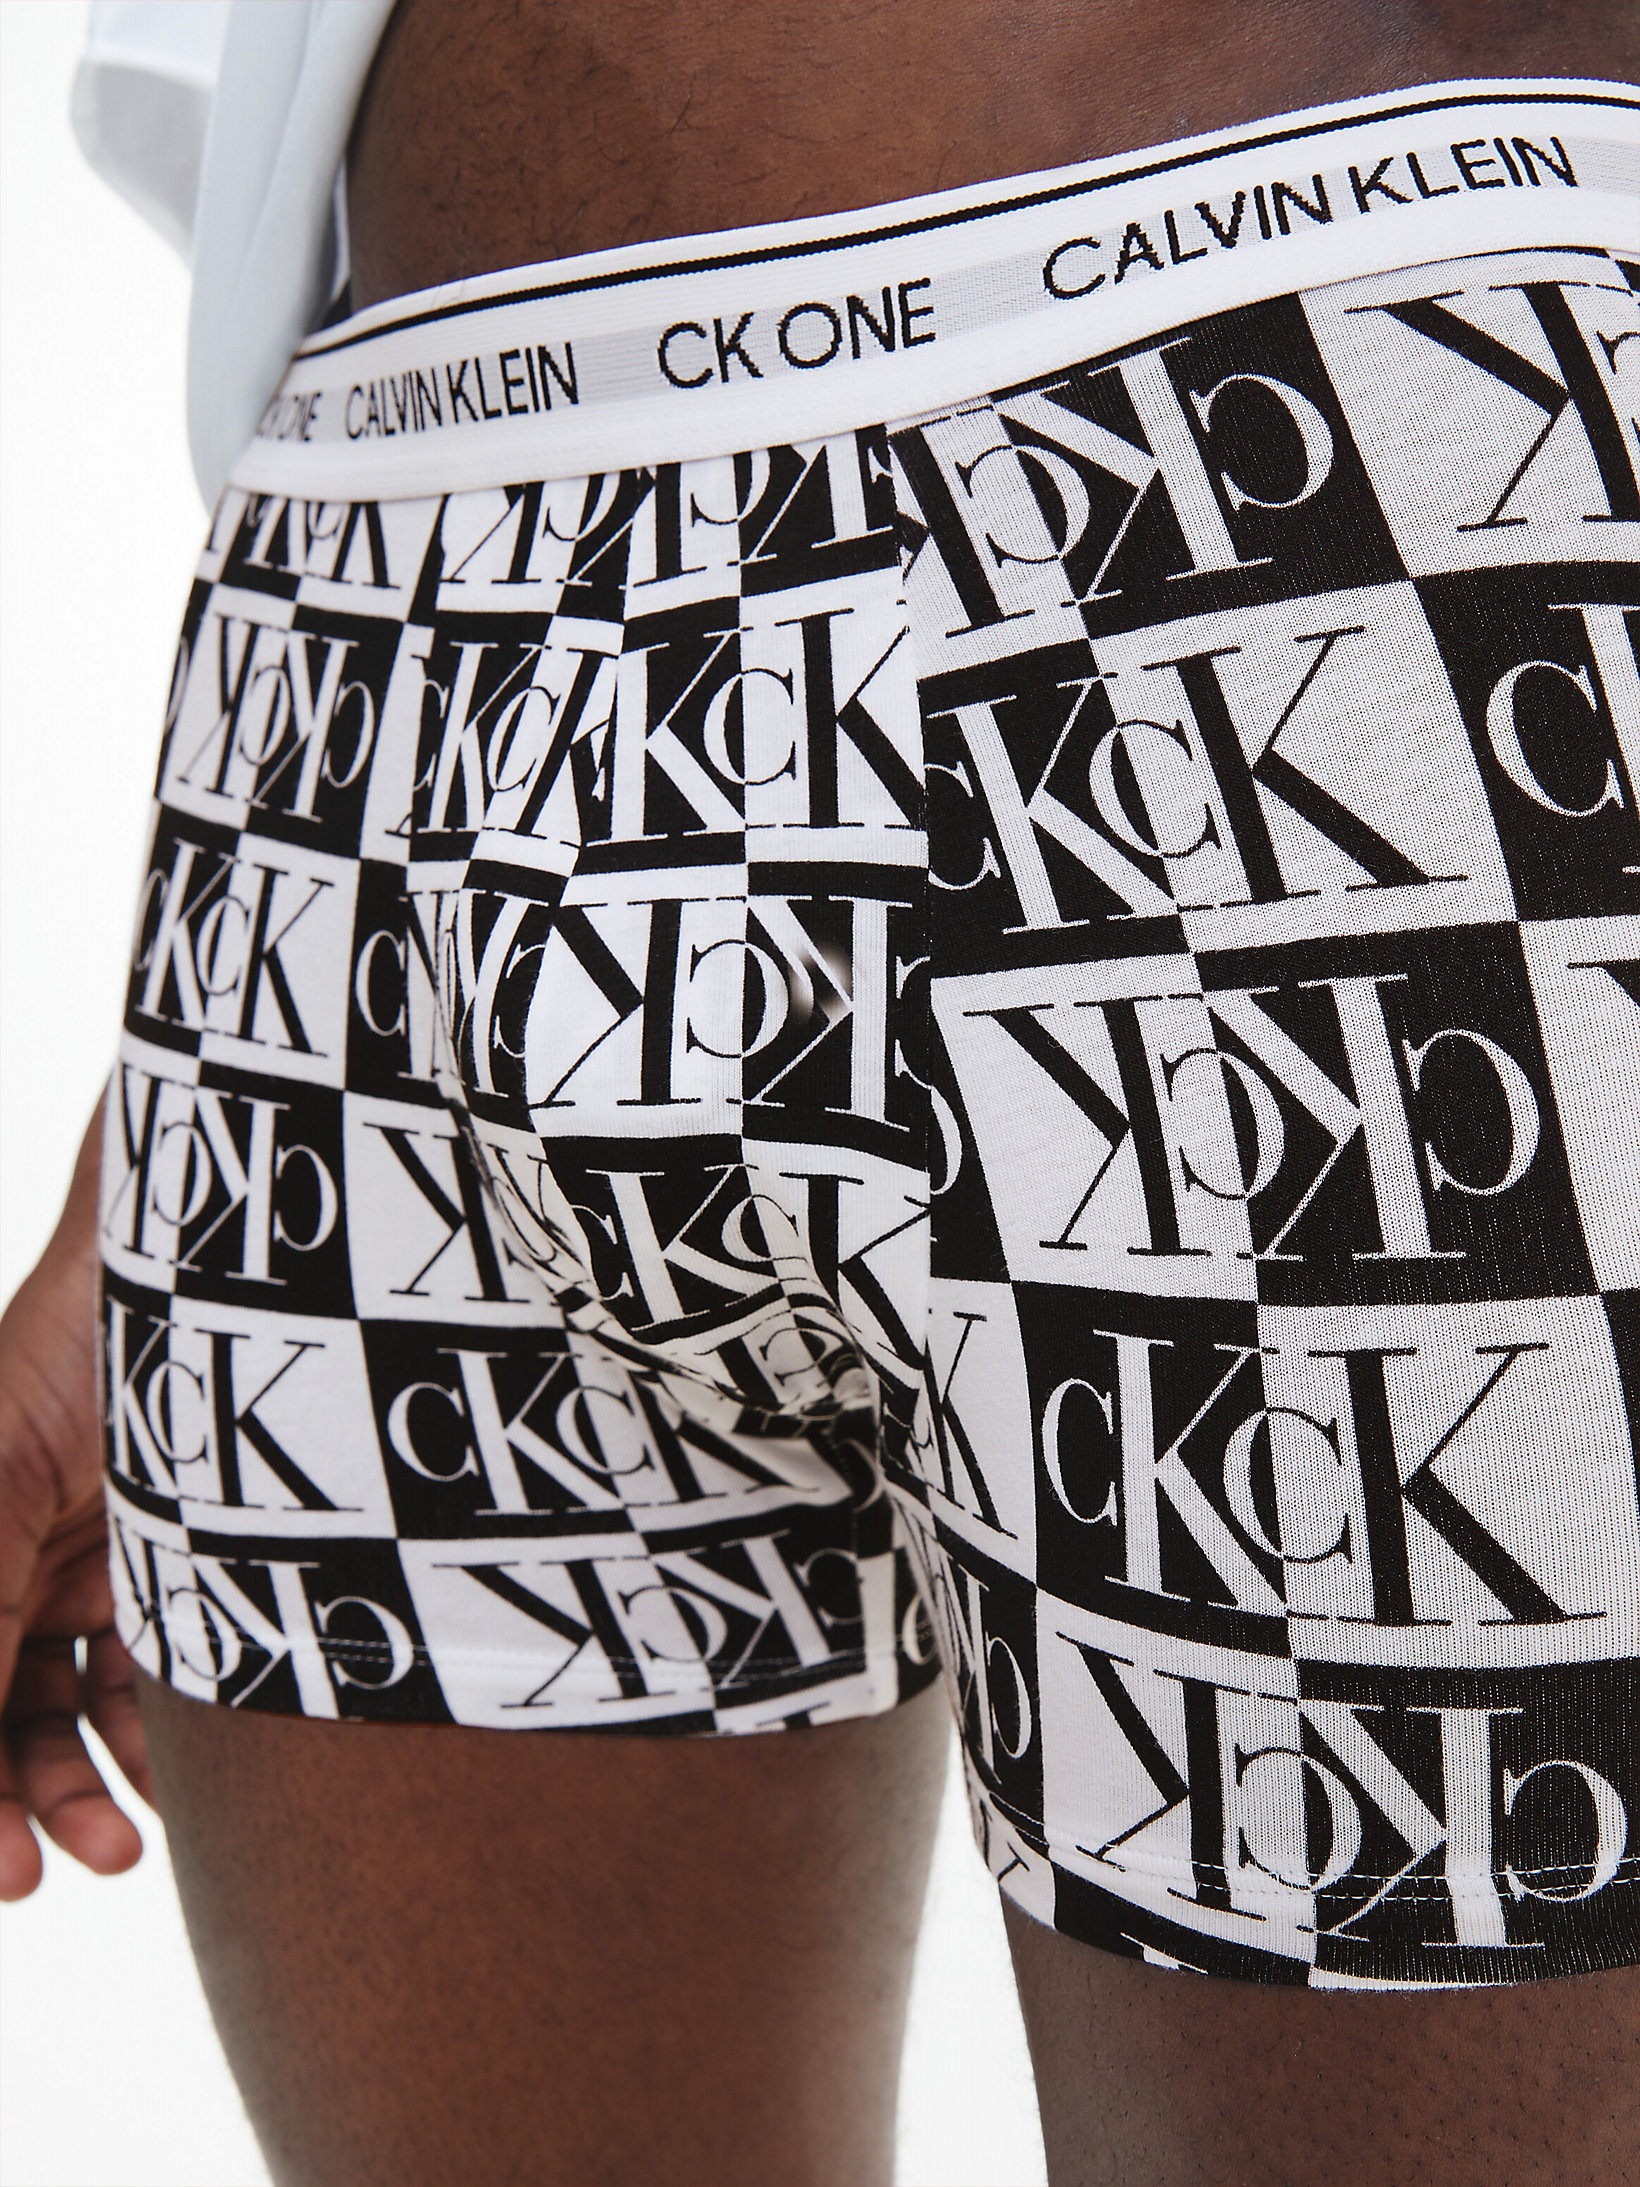 CK One Calvin Klein Bambino Abbigliamento Intimo Boxer shorts Boxer shorts aderenti Boxer aderenti in confezione da 3 